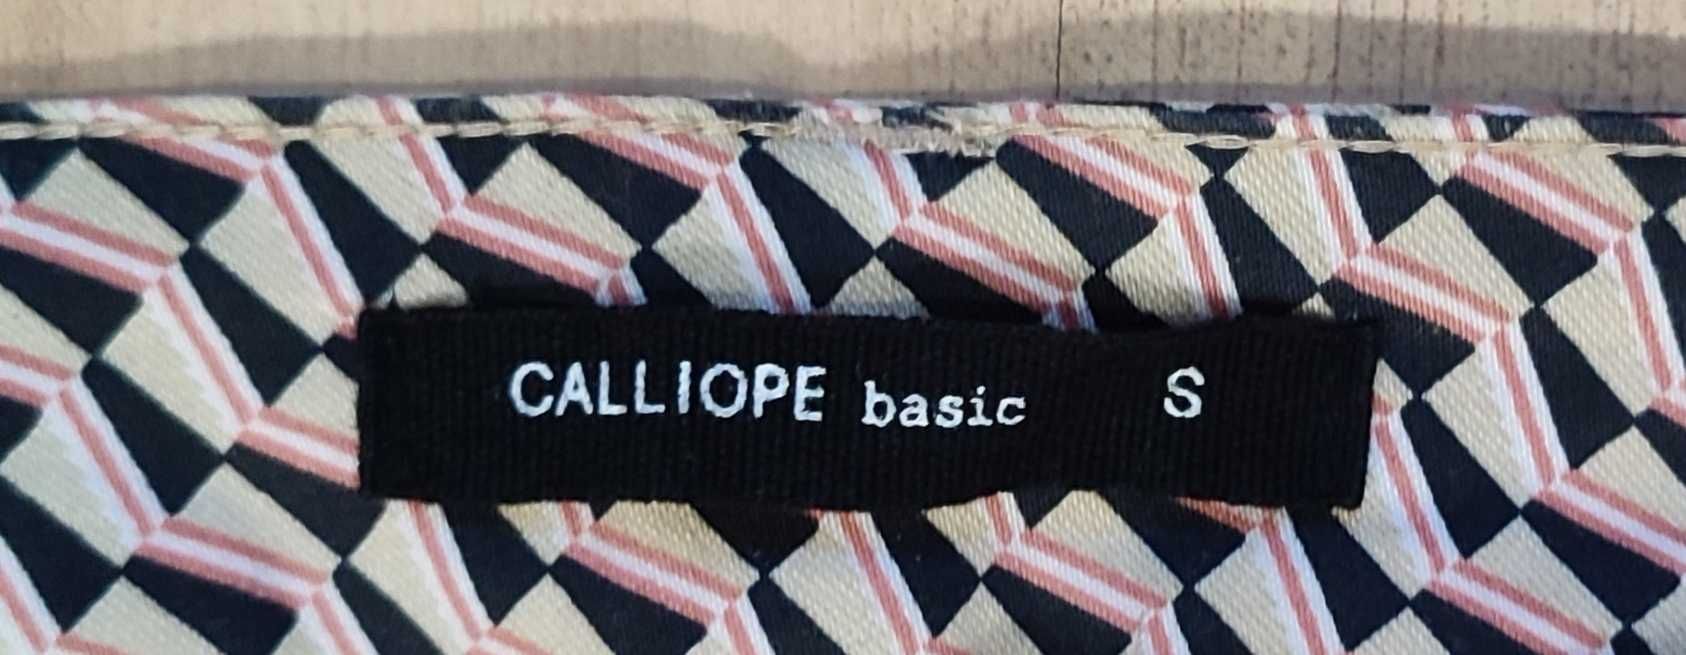 Beżowe spodnie damskie Calliope basic S 36 we wzorki